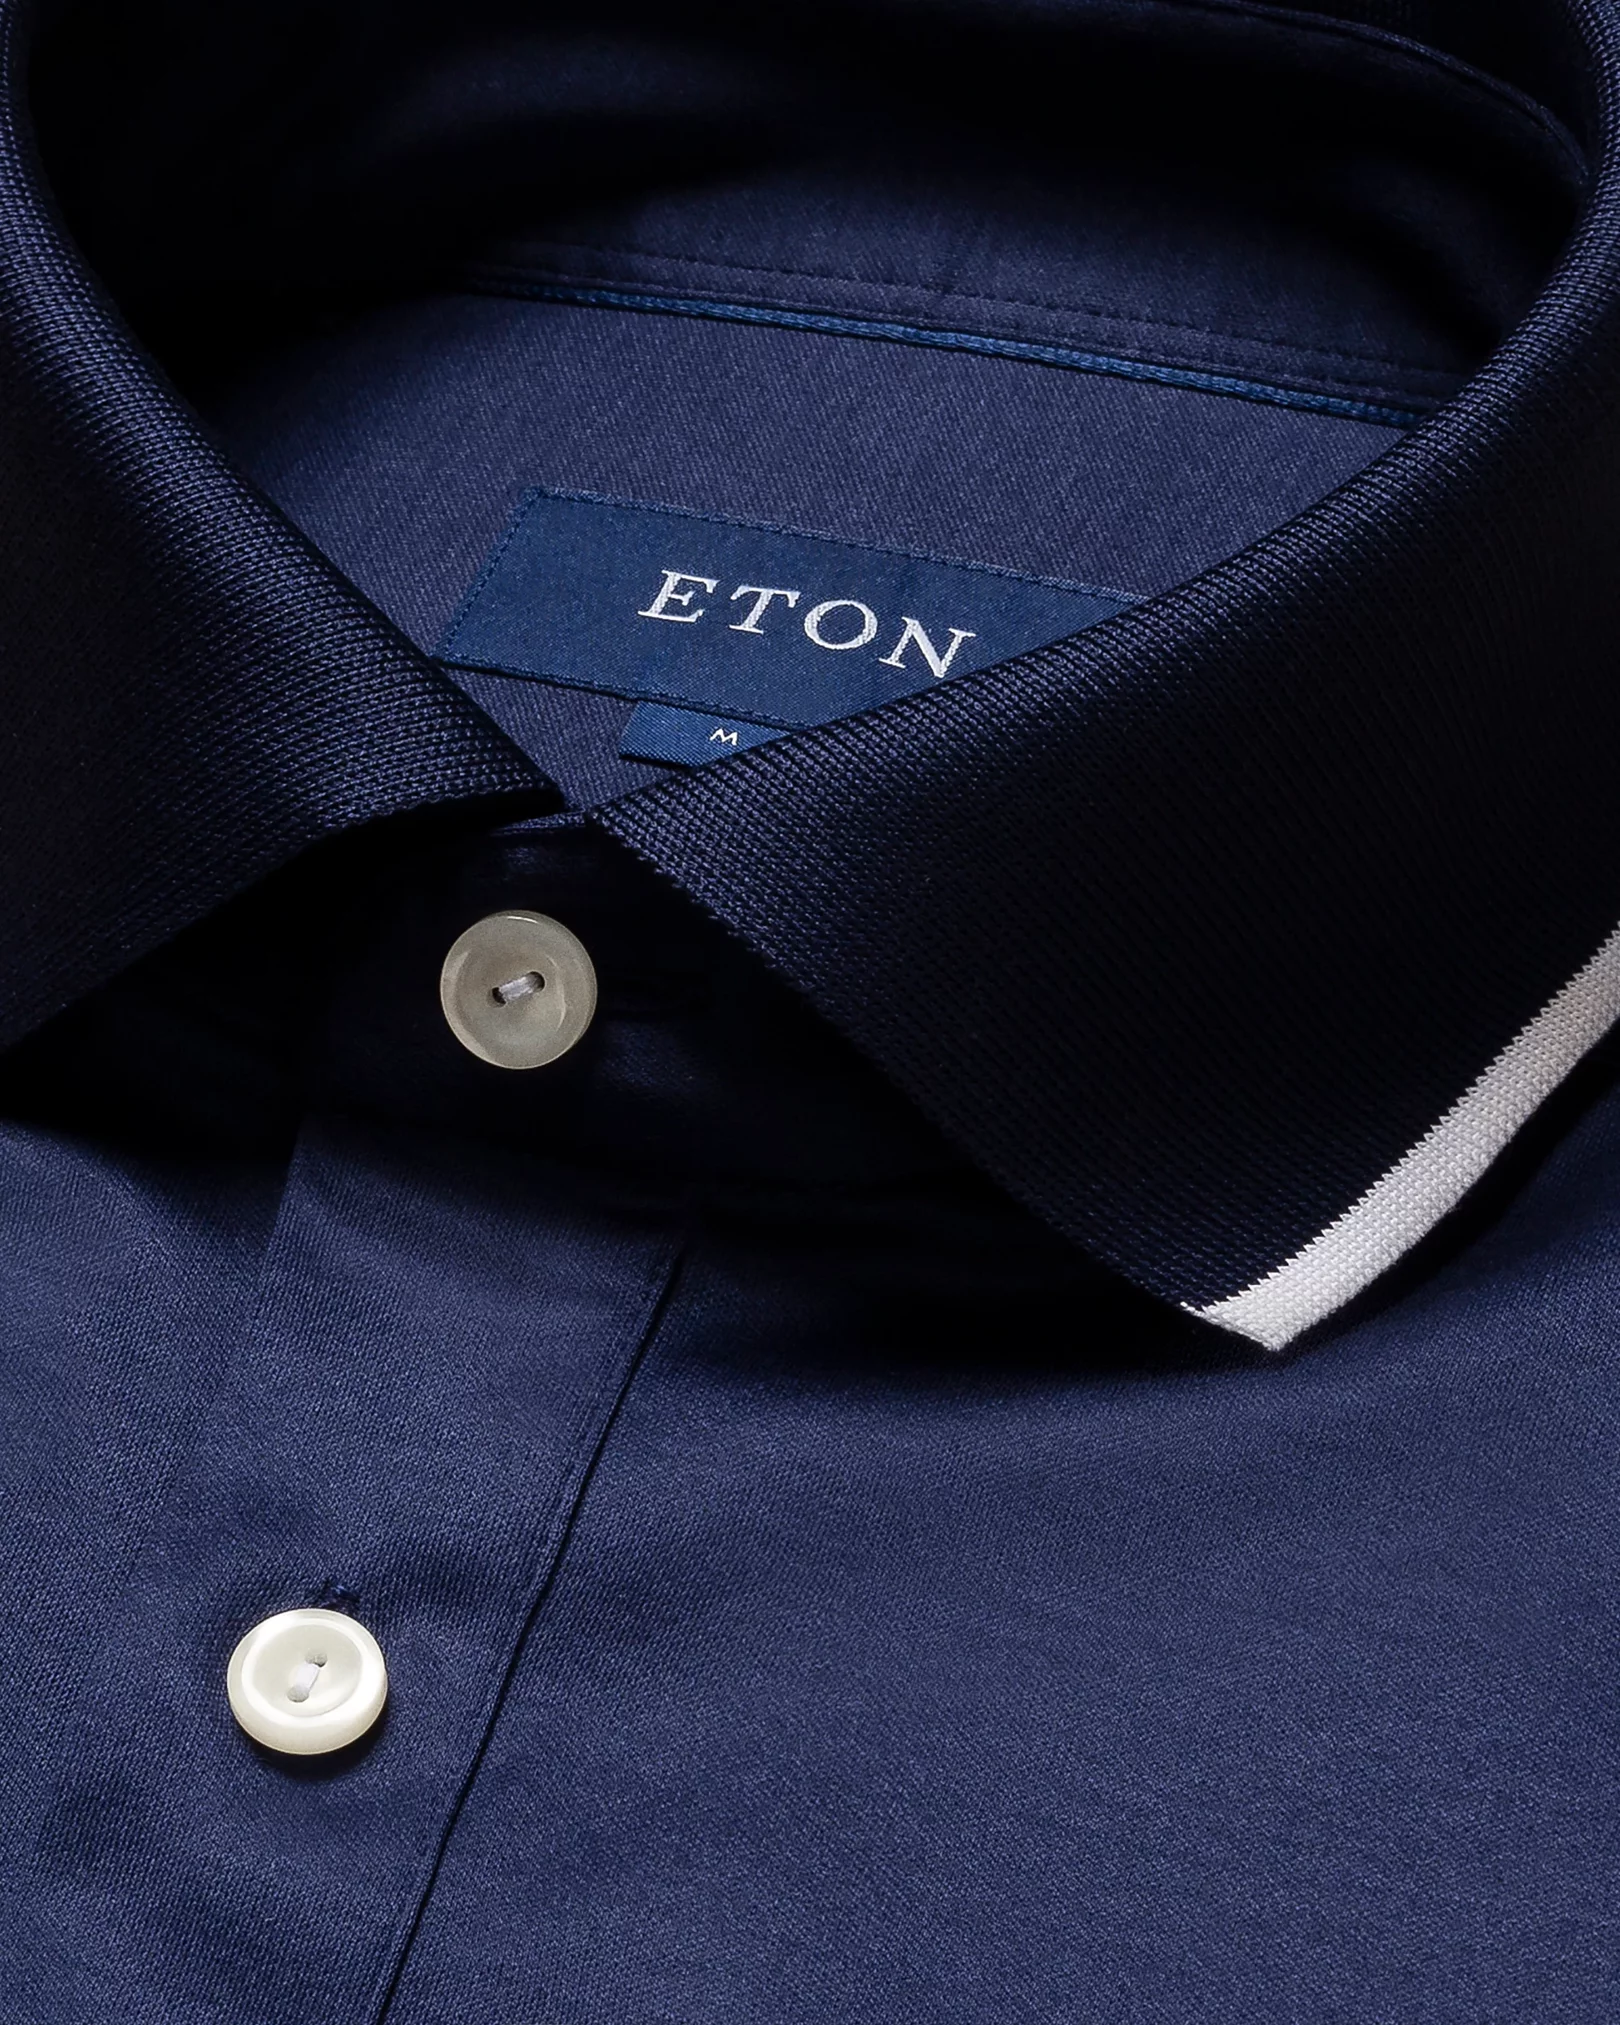 Eton - dark blue jersey